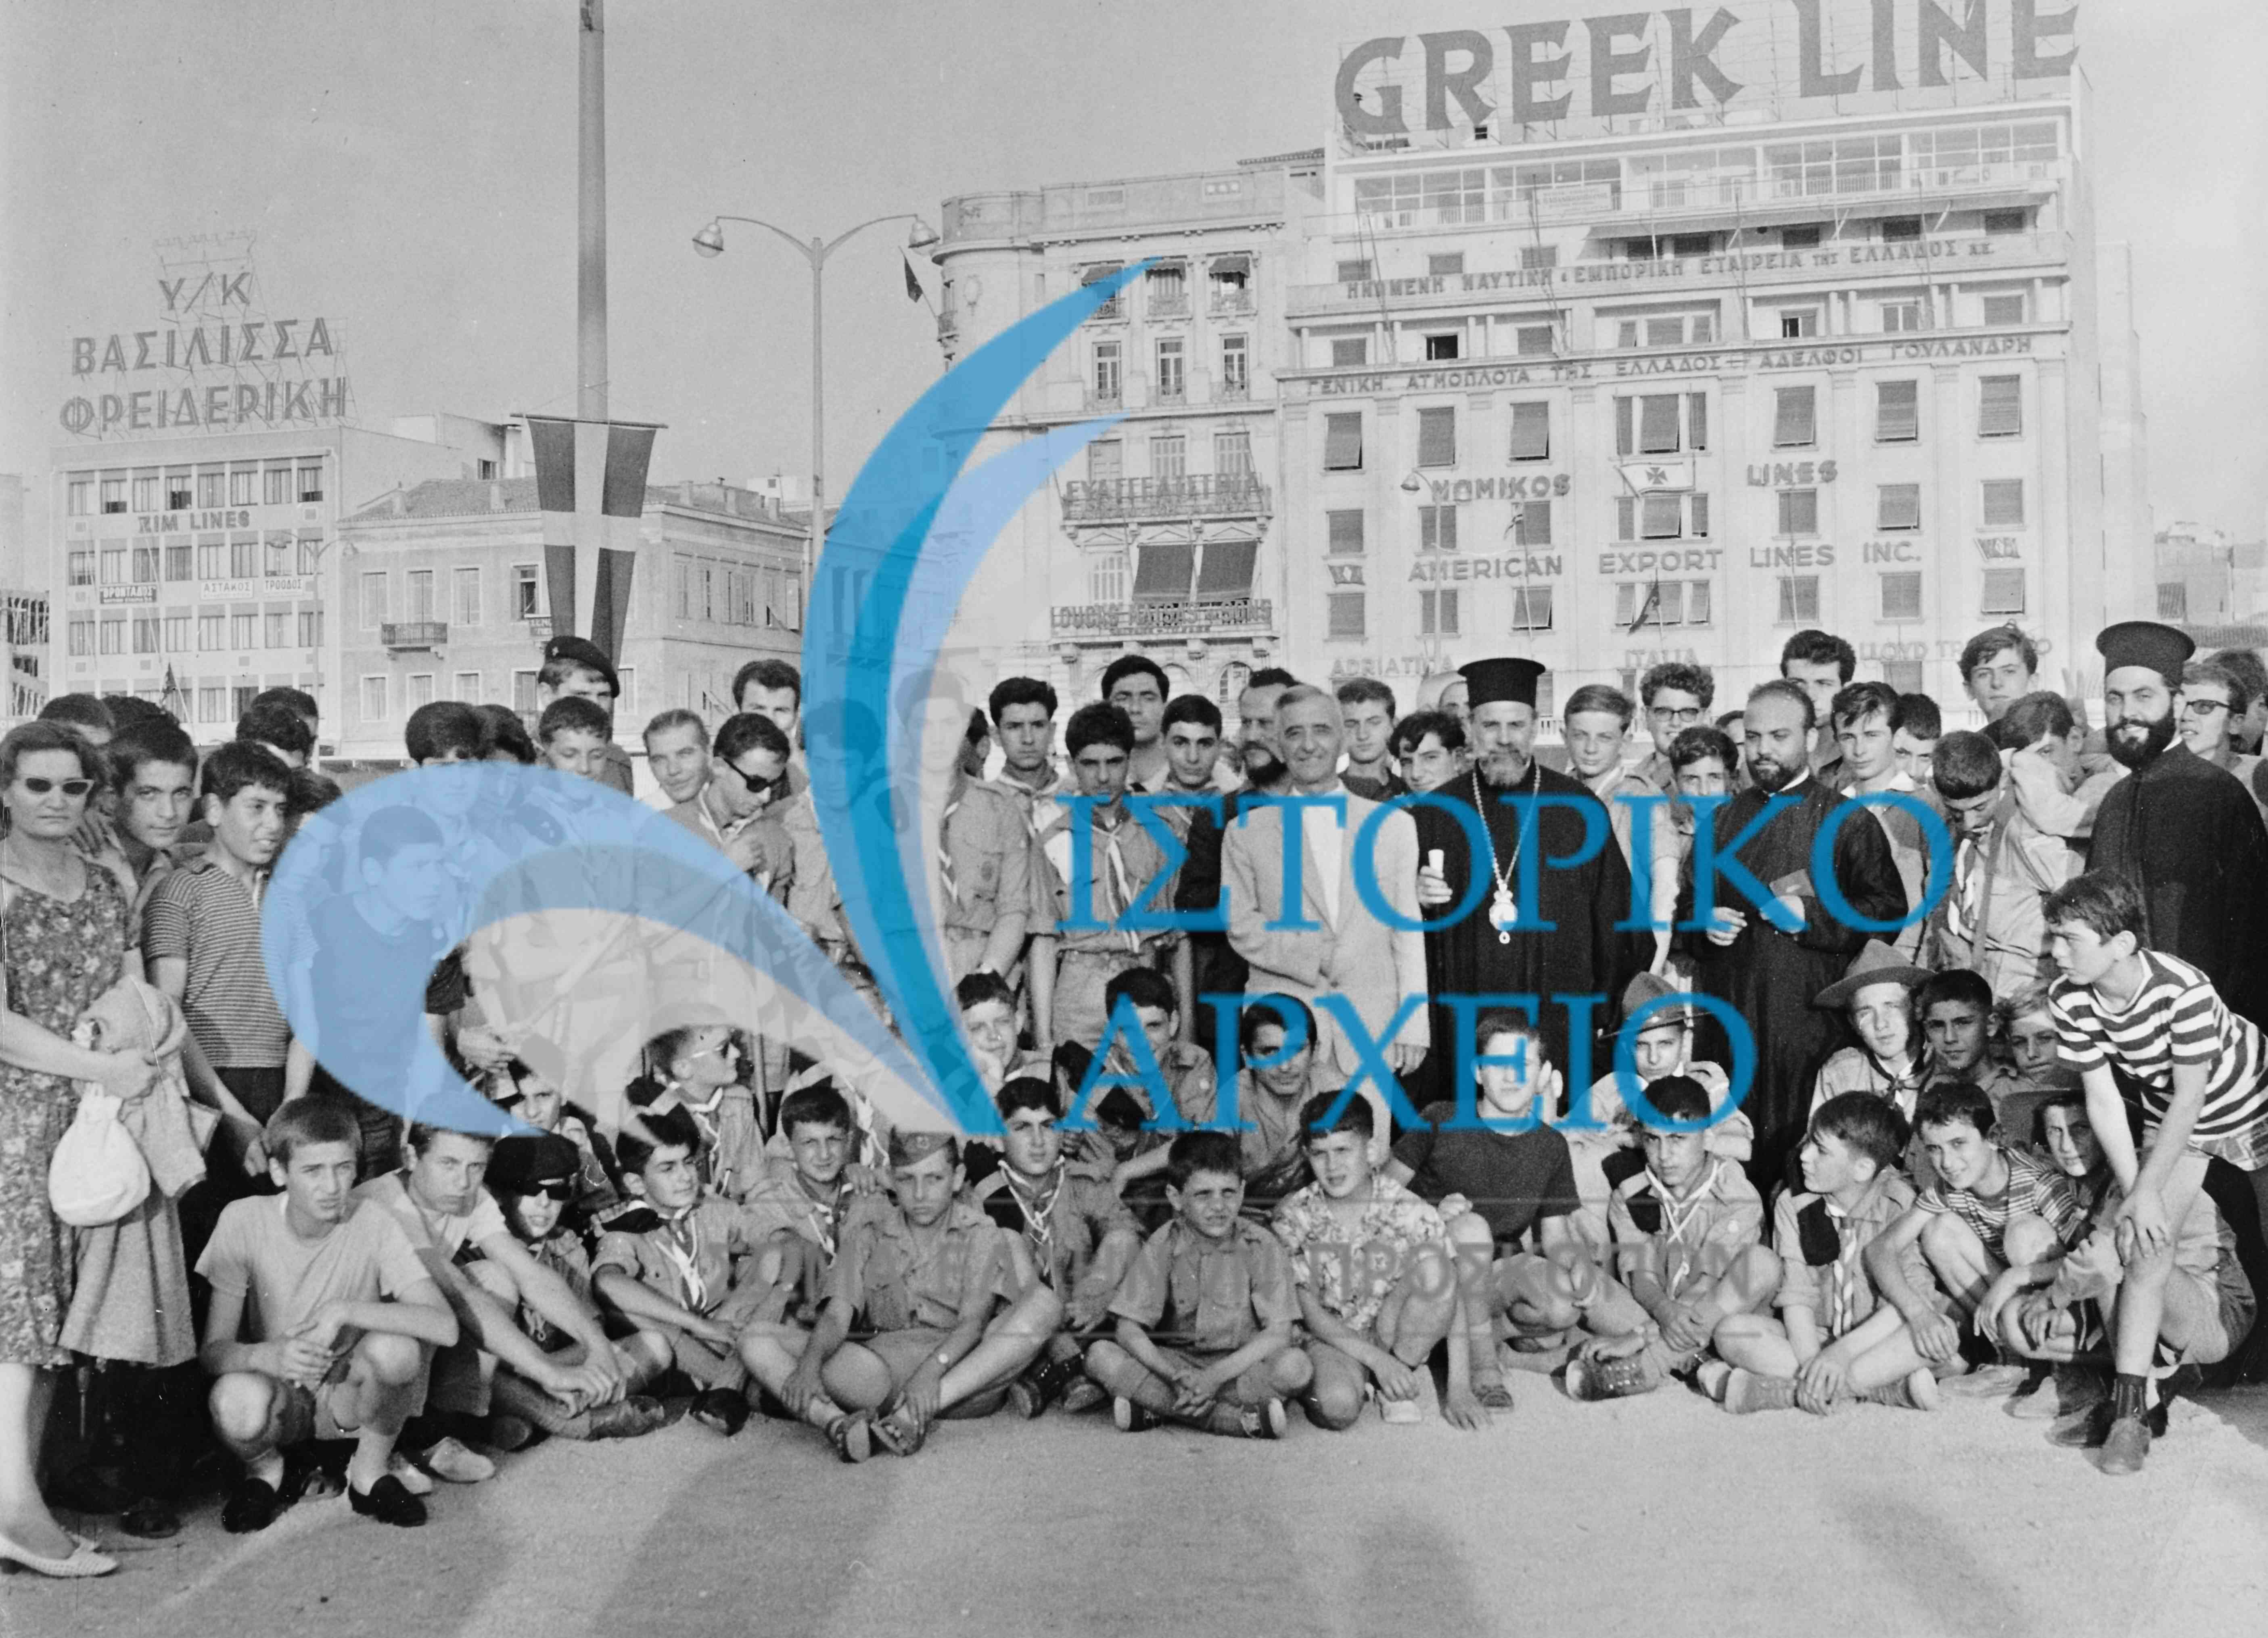 Στιγμιότυπο από την άφιξη των 150 Ελλήνων Προσκόπων από την Γαλλία στο λιμάνι του Πειραιά το 1962. Επικεφαλής τους ο Μητροπολίτης Μελέτιος.